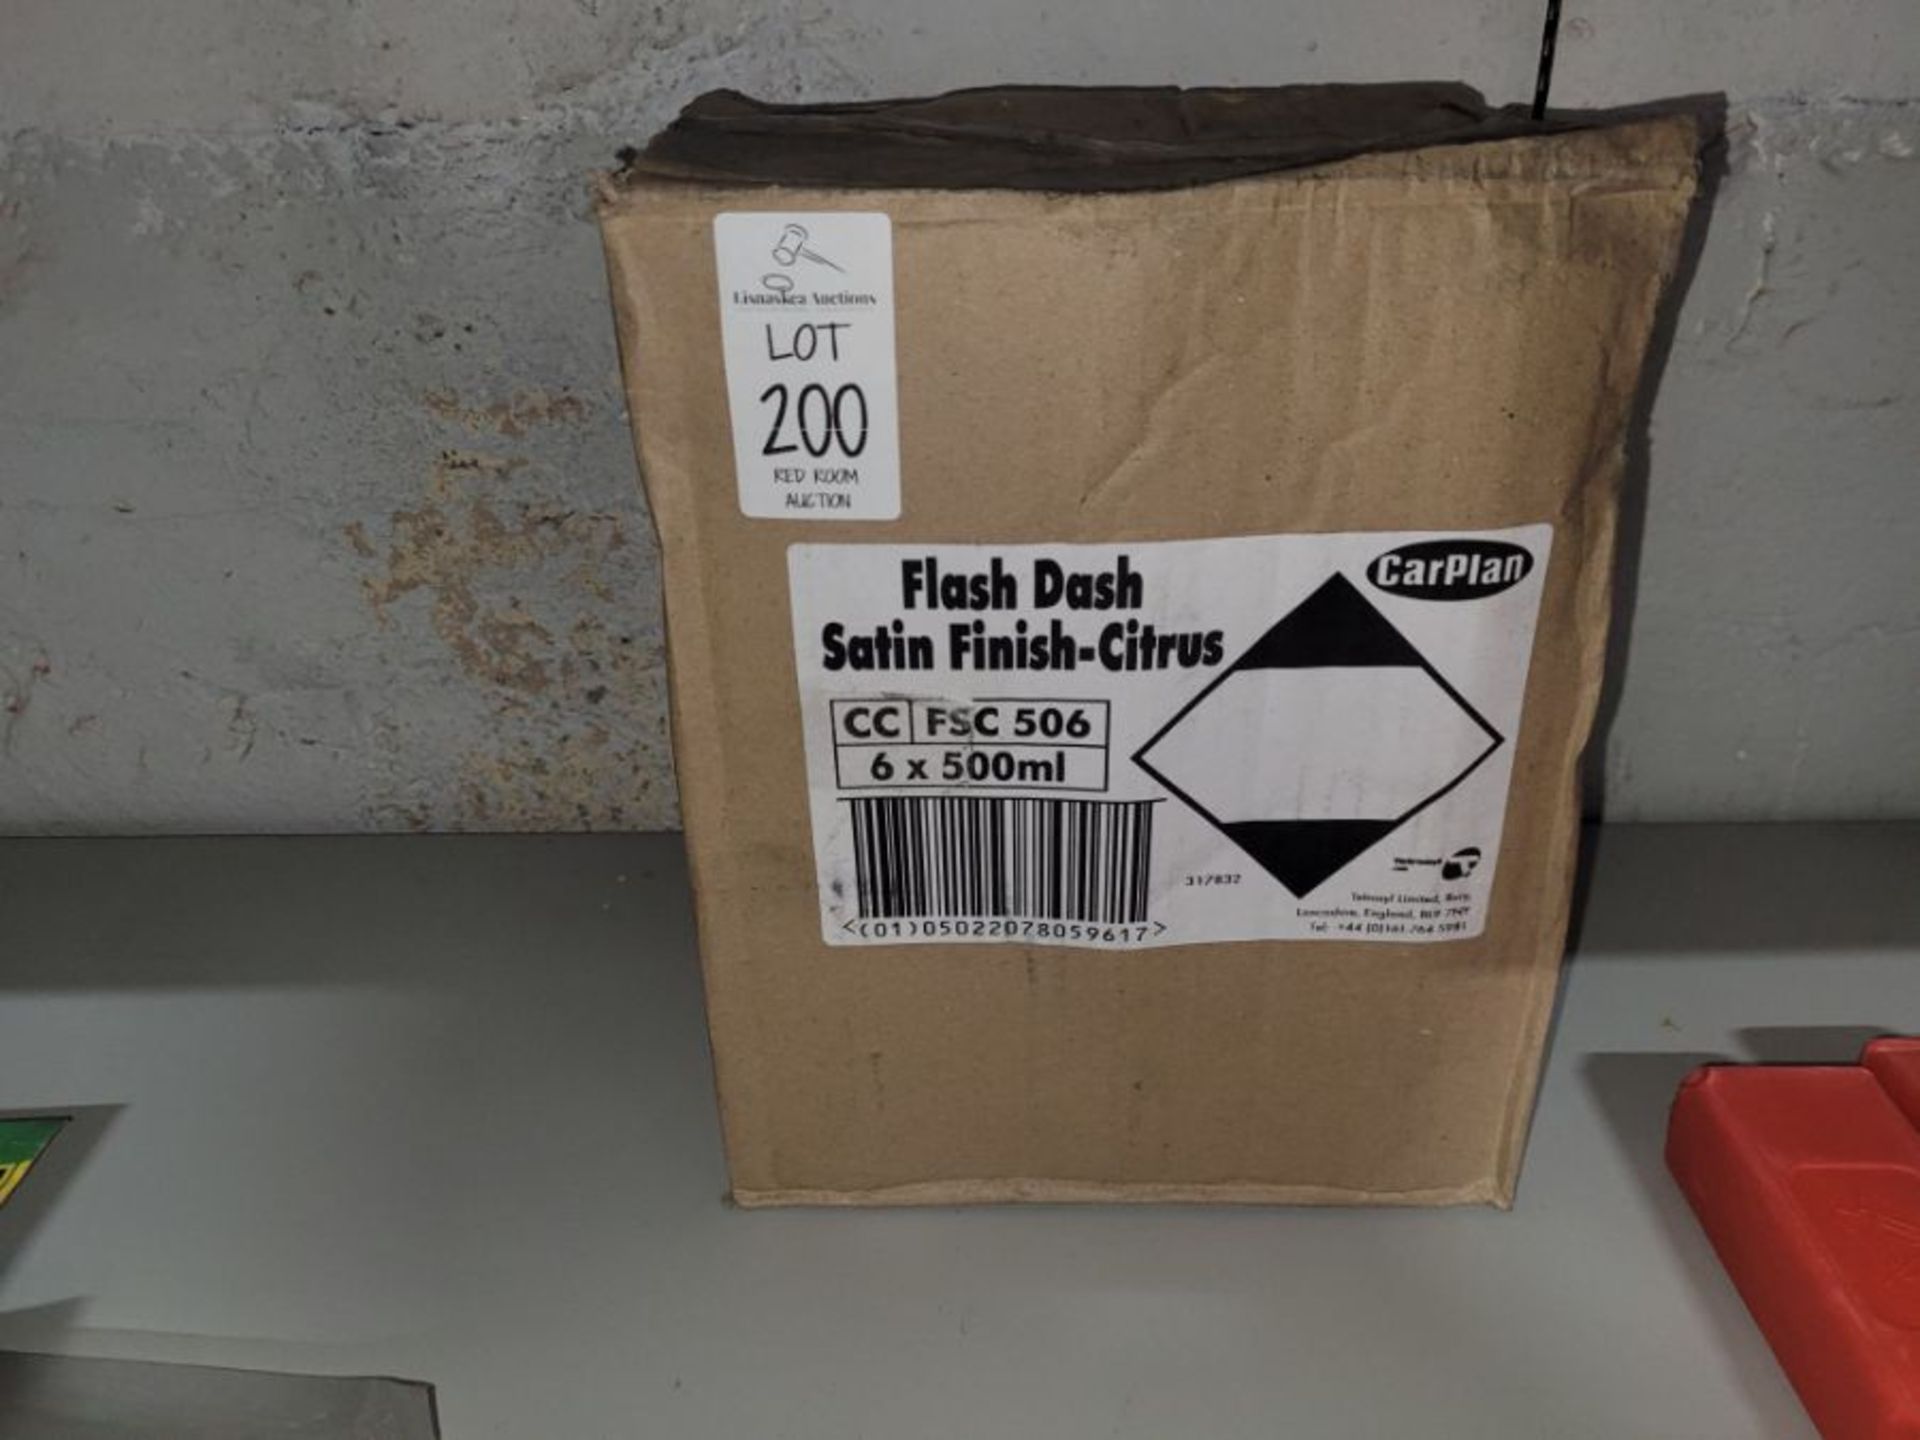 BOX OF 6 FLASH DASH SATIN FINISH CITRUS - Image 2 of 3